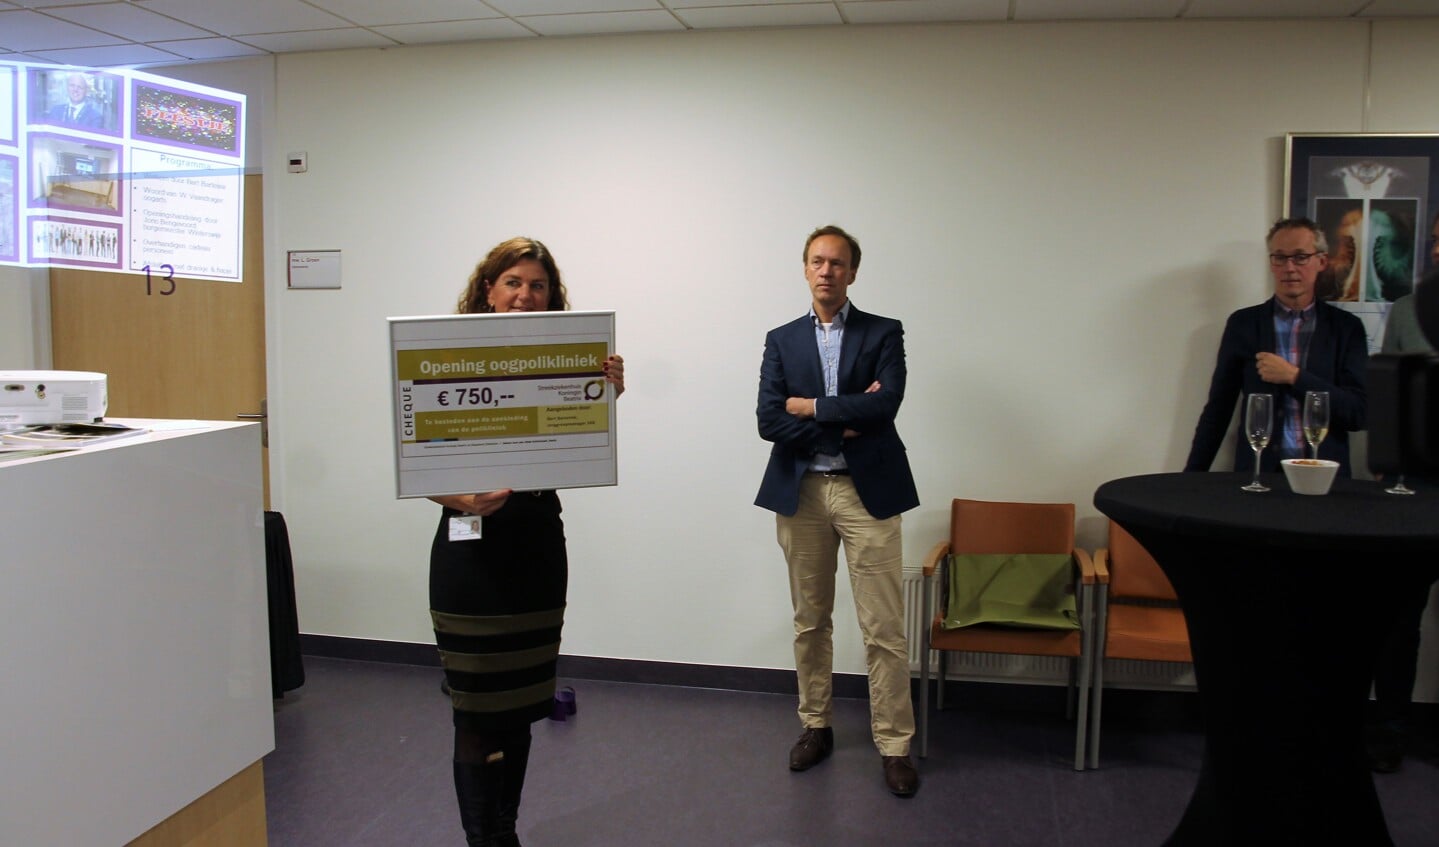 Het team kreeg een cheque van 750 euro voor de aankleding van de nieuwe oogpoli. Foto: Lydia ter Welle